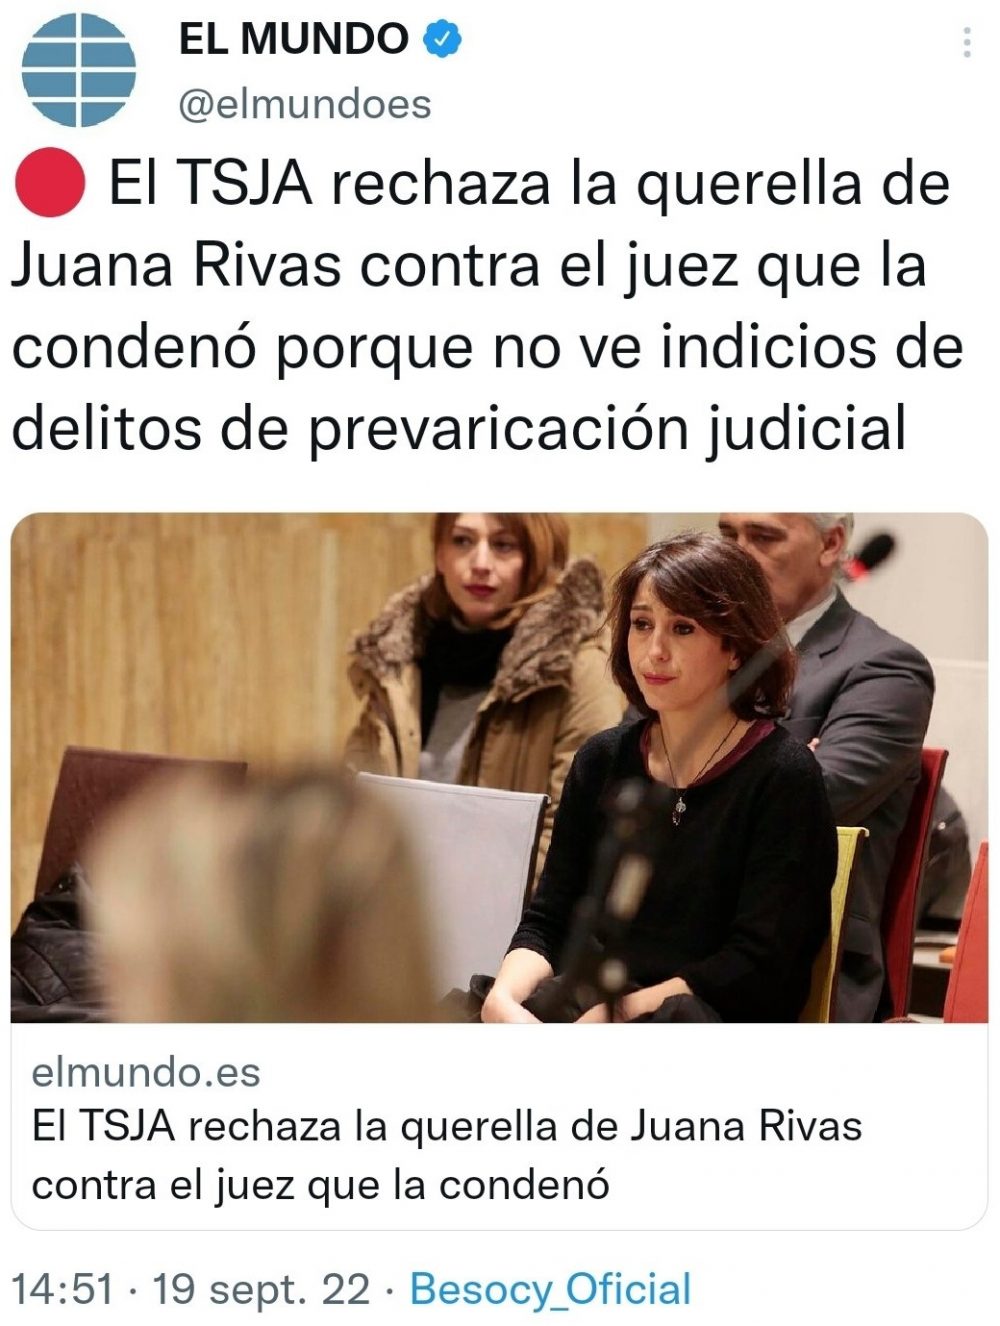 Juana Rivas: "La condena no me gusta: pos denunsio al juez"